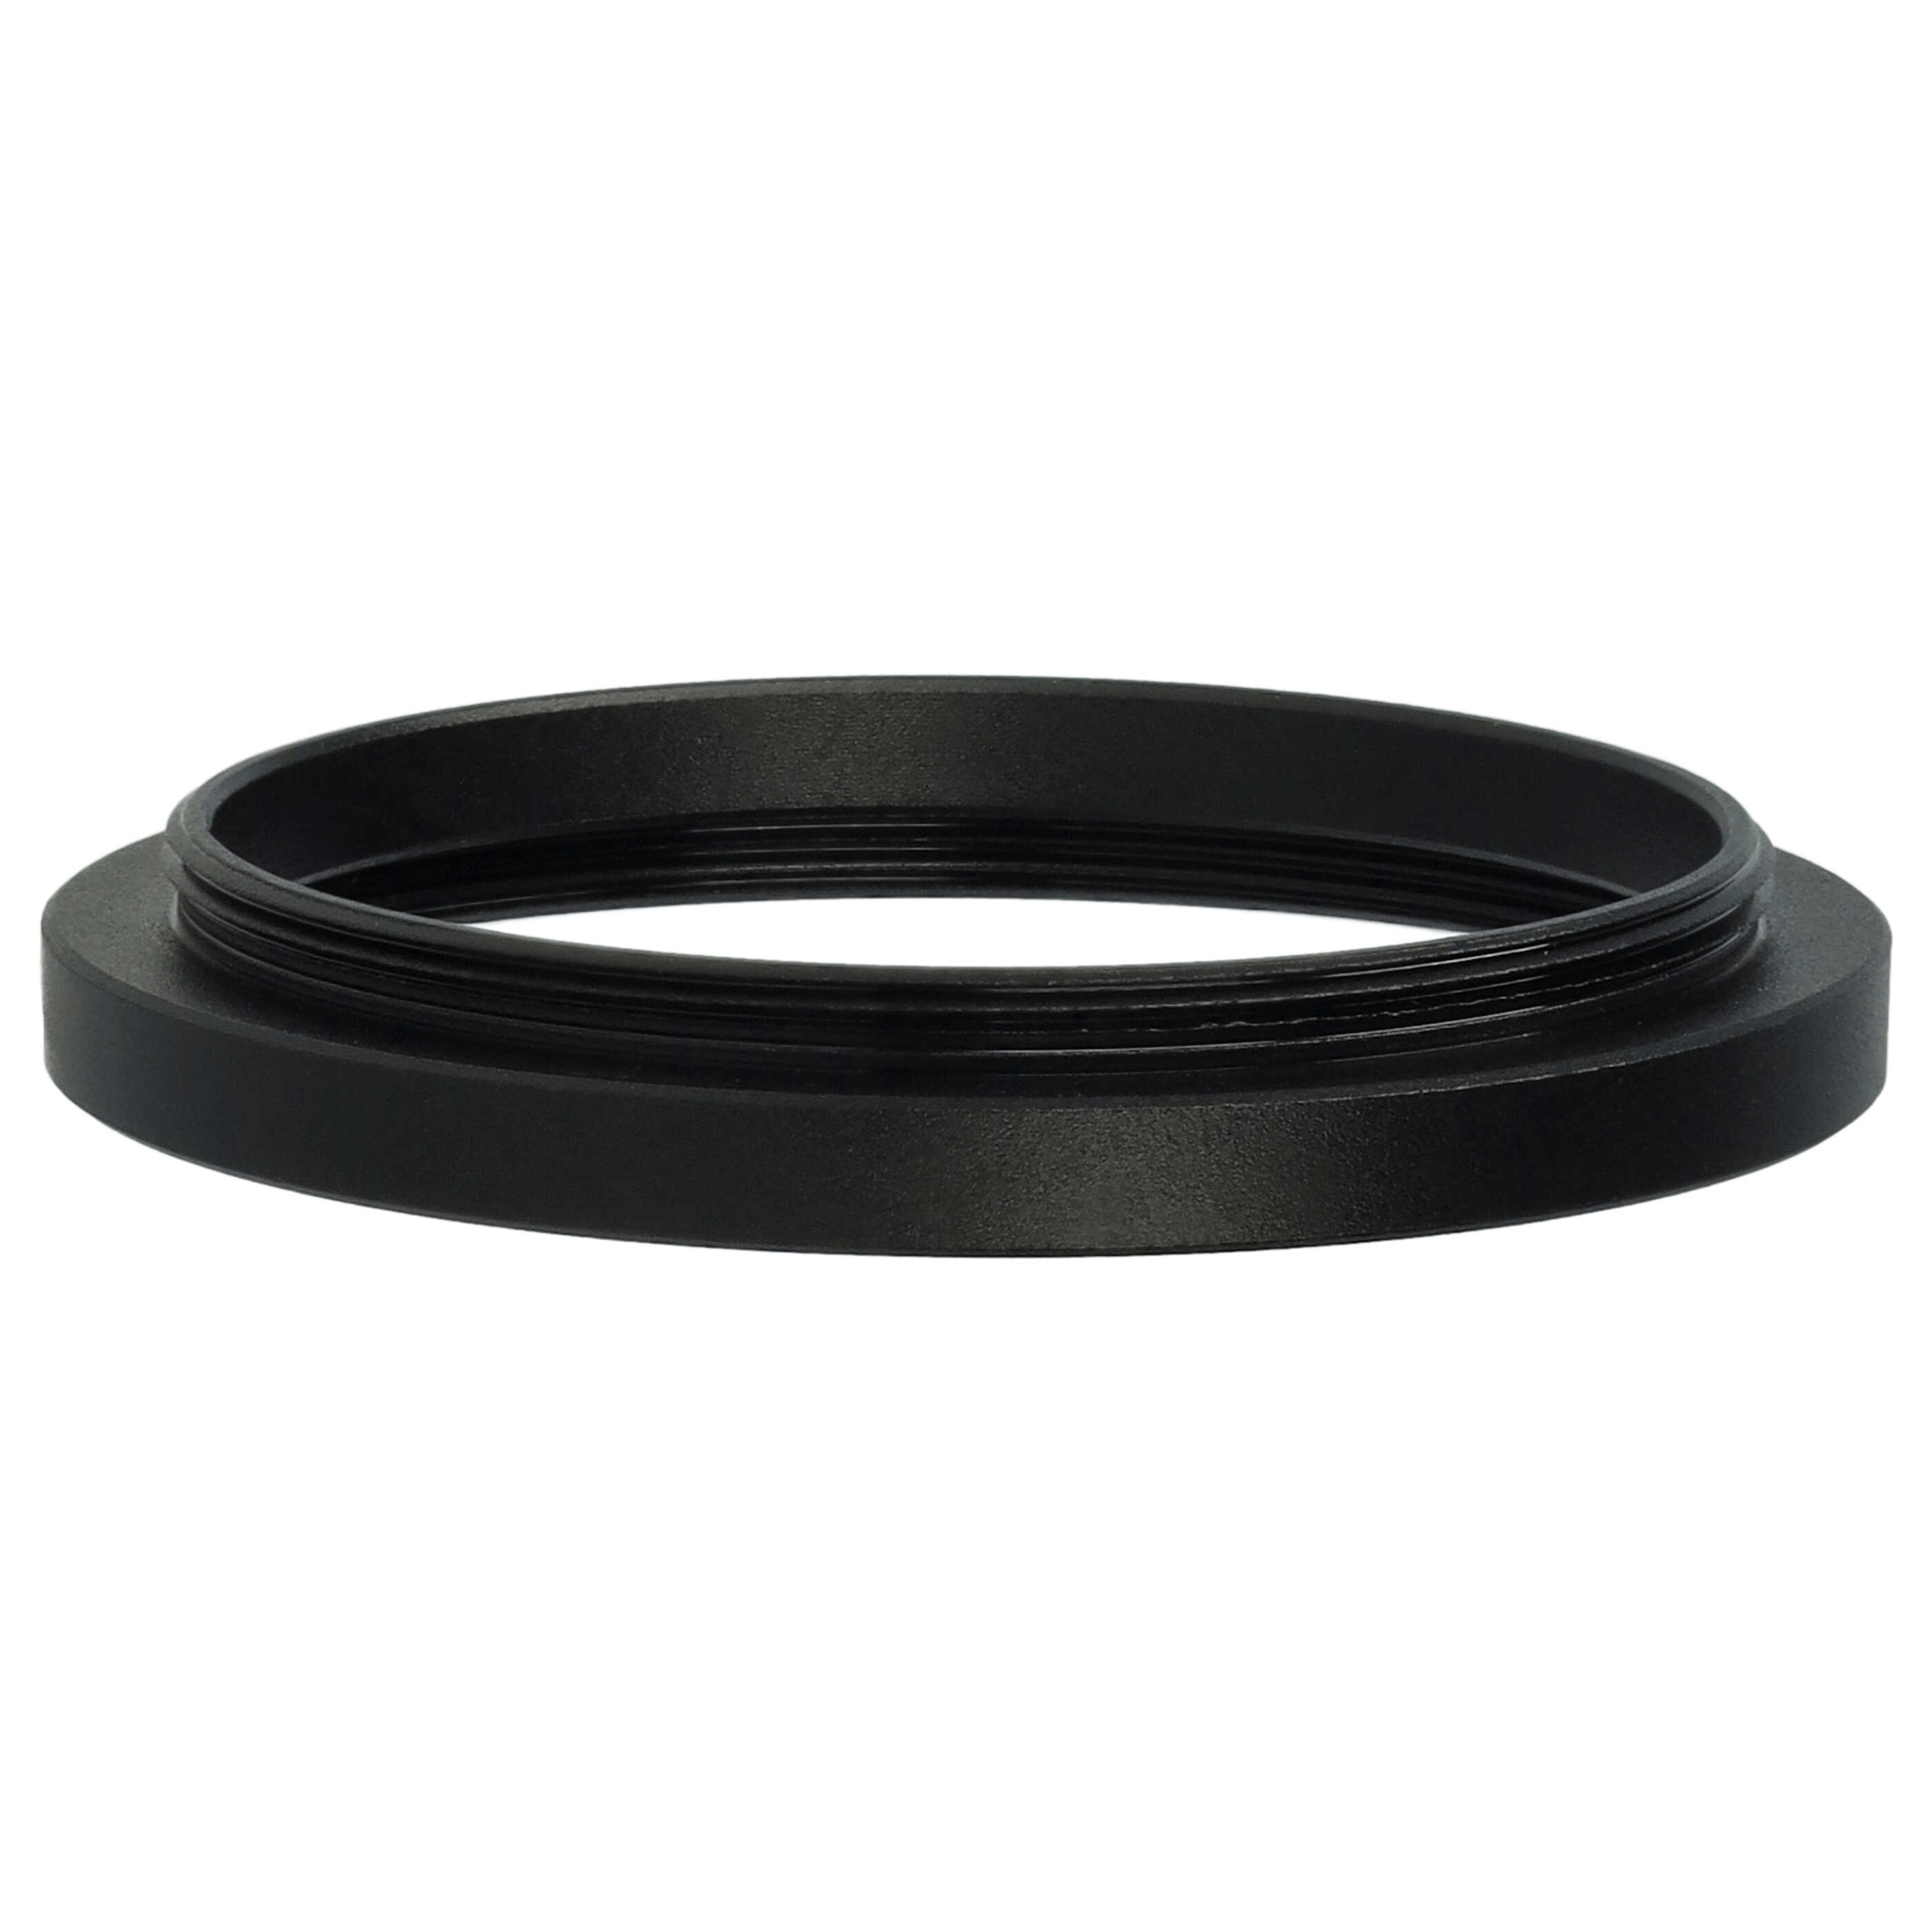 Step-Up-Ring Adapter 39 mm auf 42 mm passend für diverse Kamera-Objektive - Filteradapter